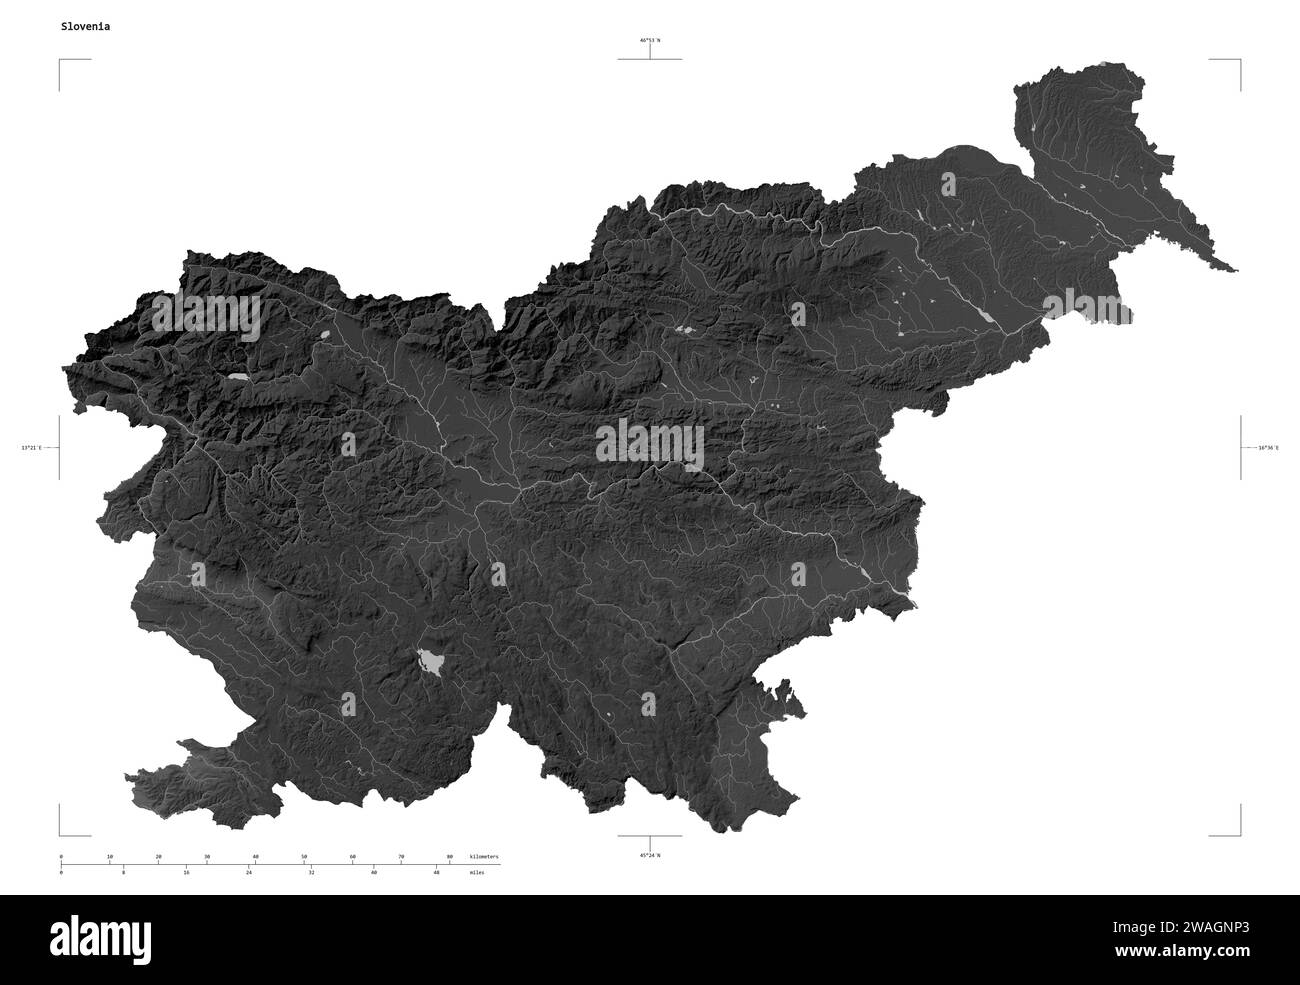 Forma di una mappa di elevazione in scala di grigi con laghi e fiumi della Slovenia, con scala di distanza e coordinate di confine della mappa, isolati su bianco Foto Stock